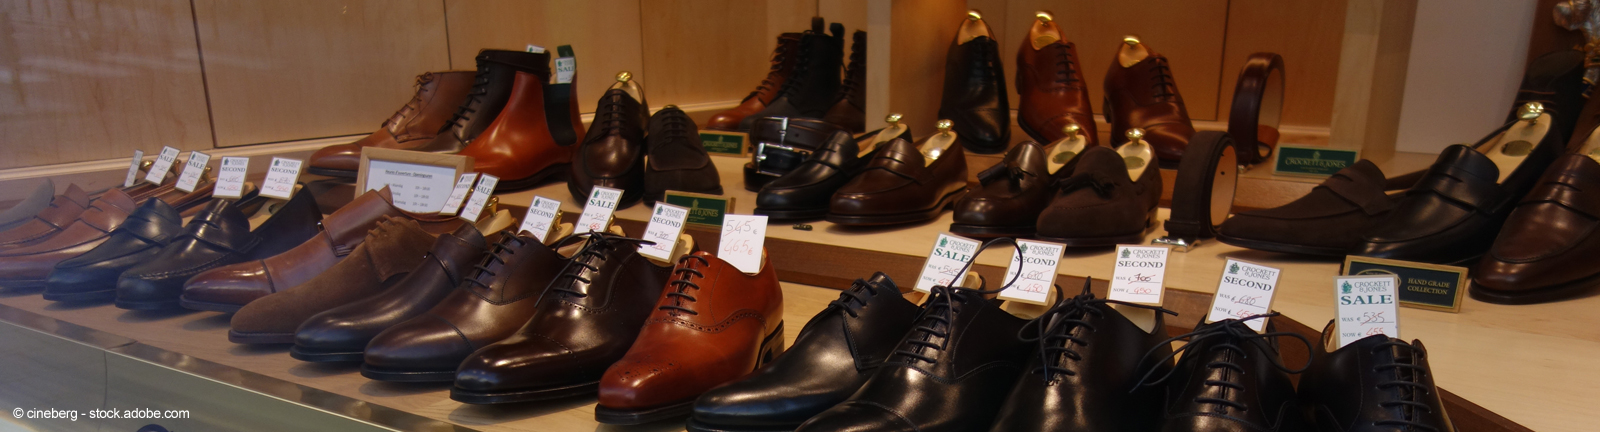 Schuhauswahl einer britischen Schuhmanufaktur